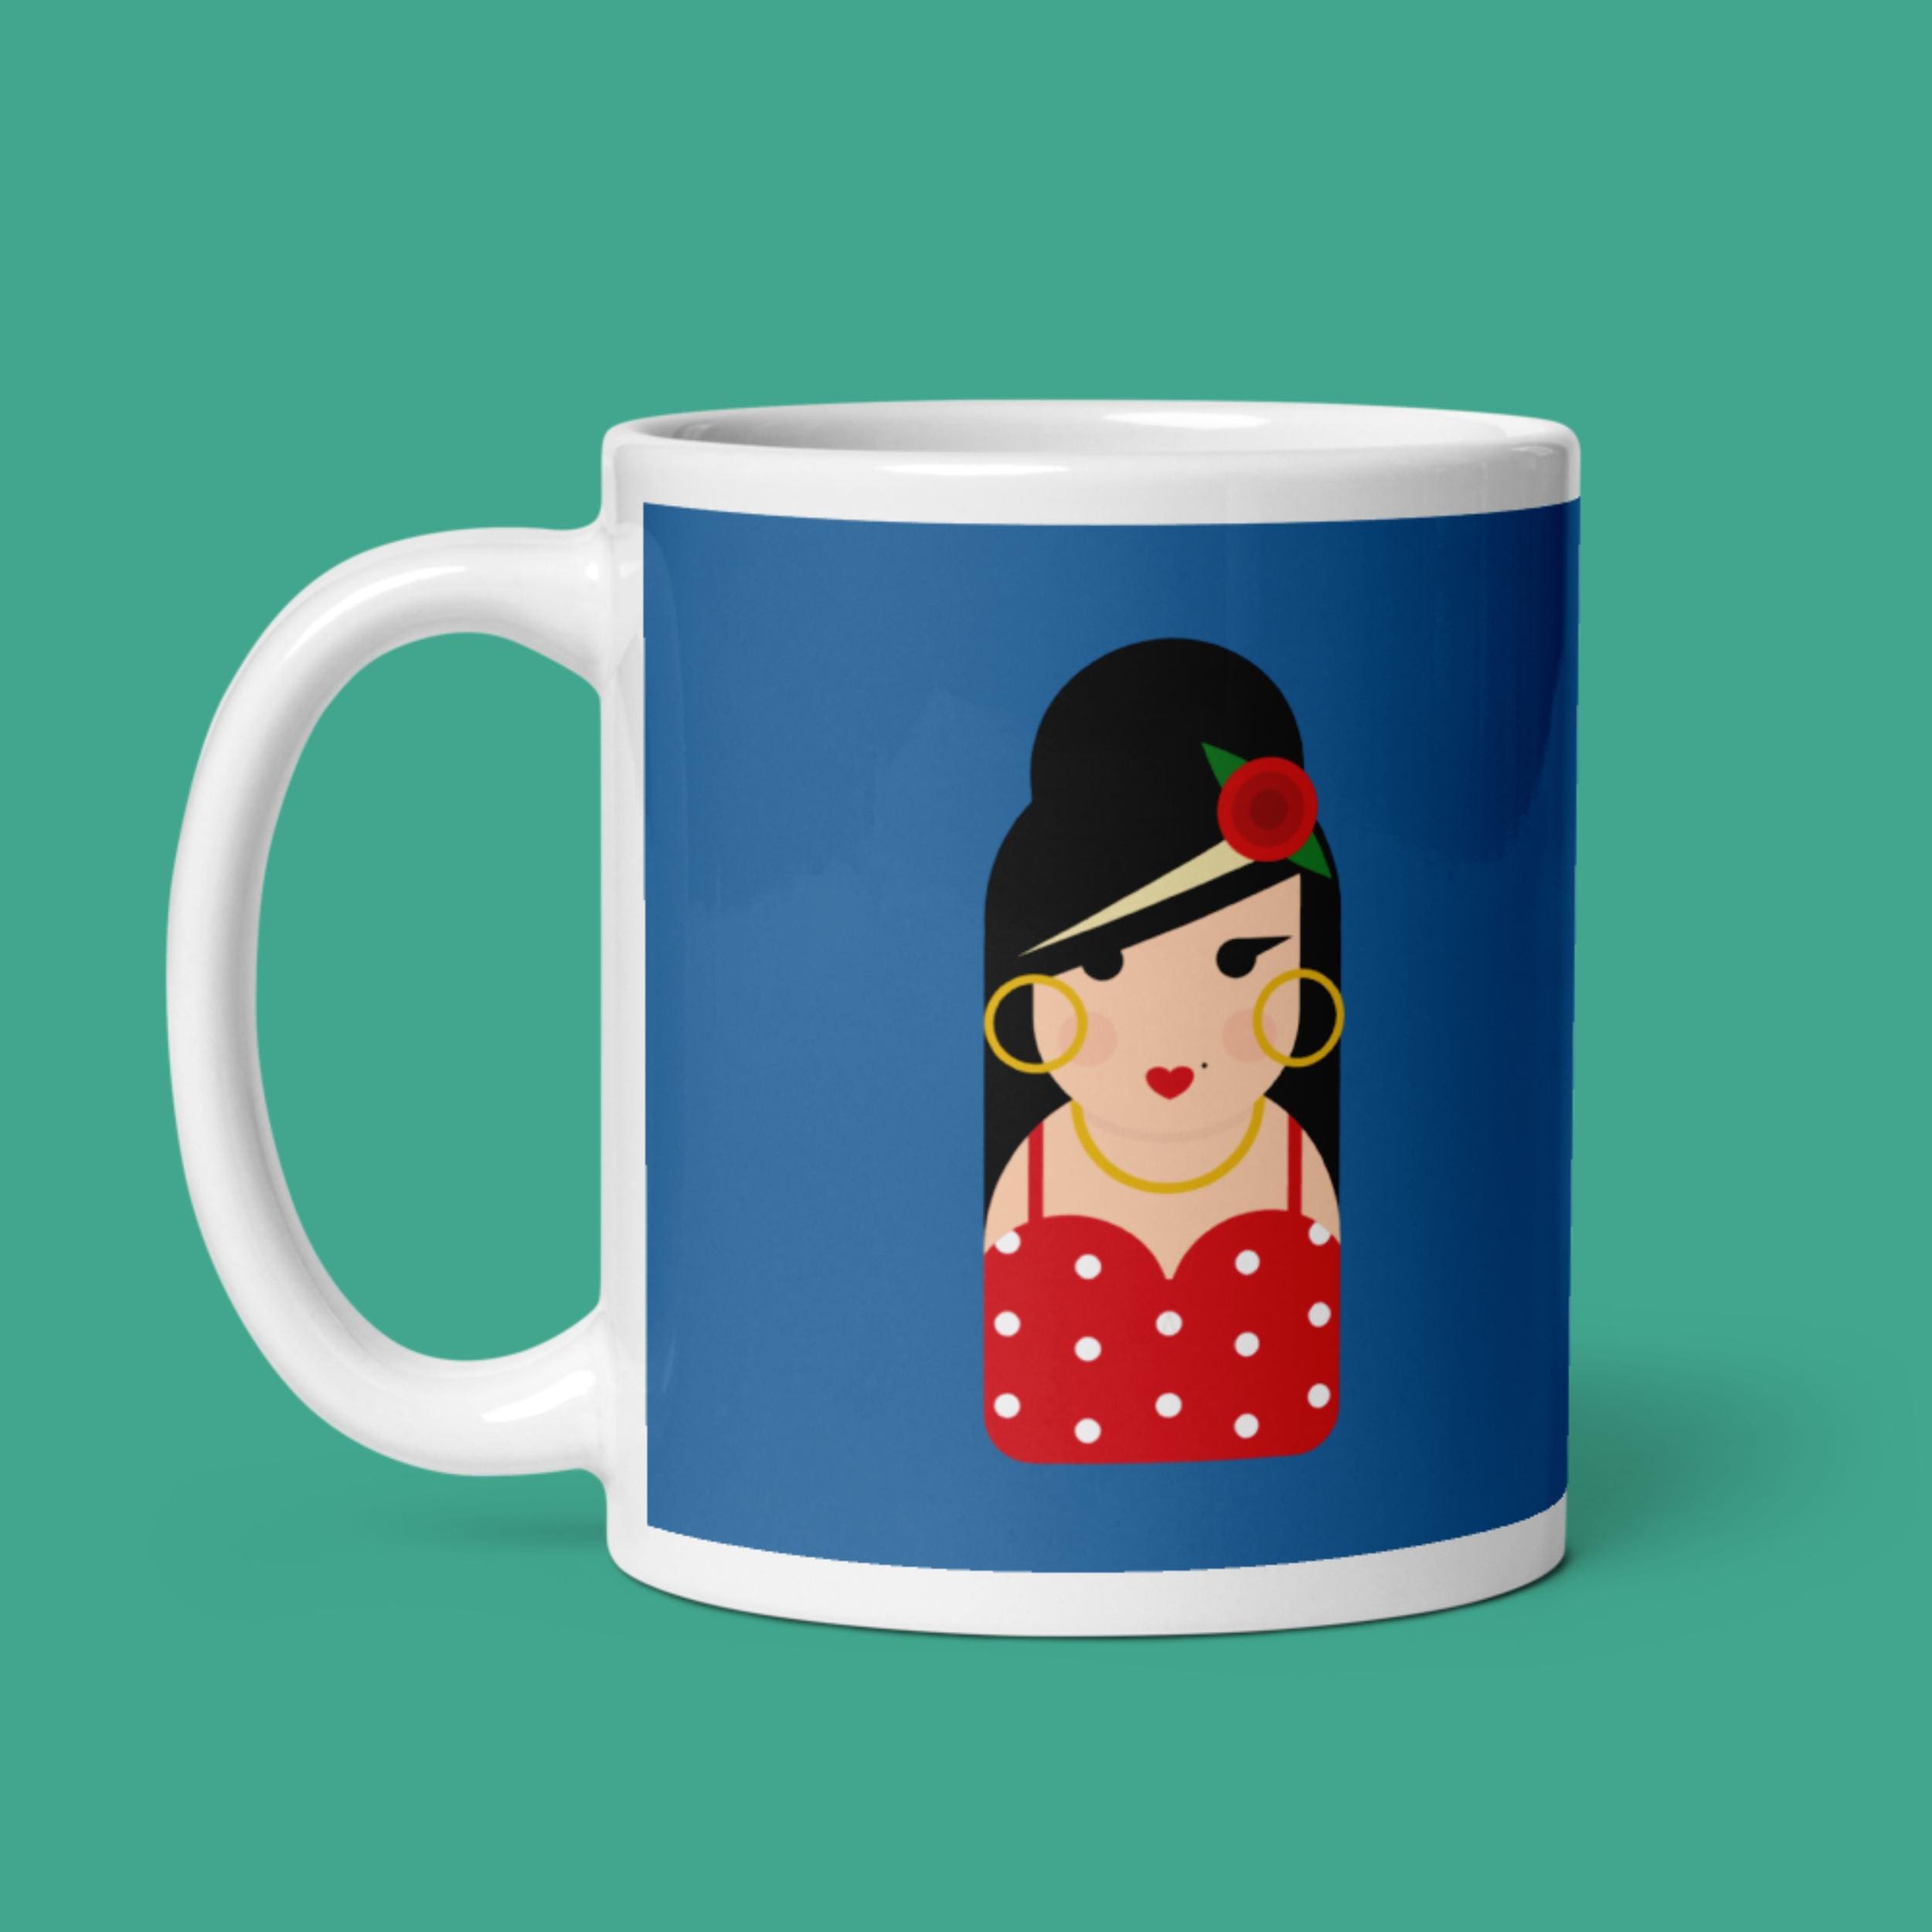 11oz Ceramic Mug - Amy Winehouse - Little Icons